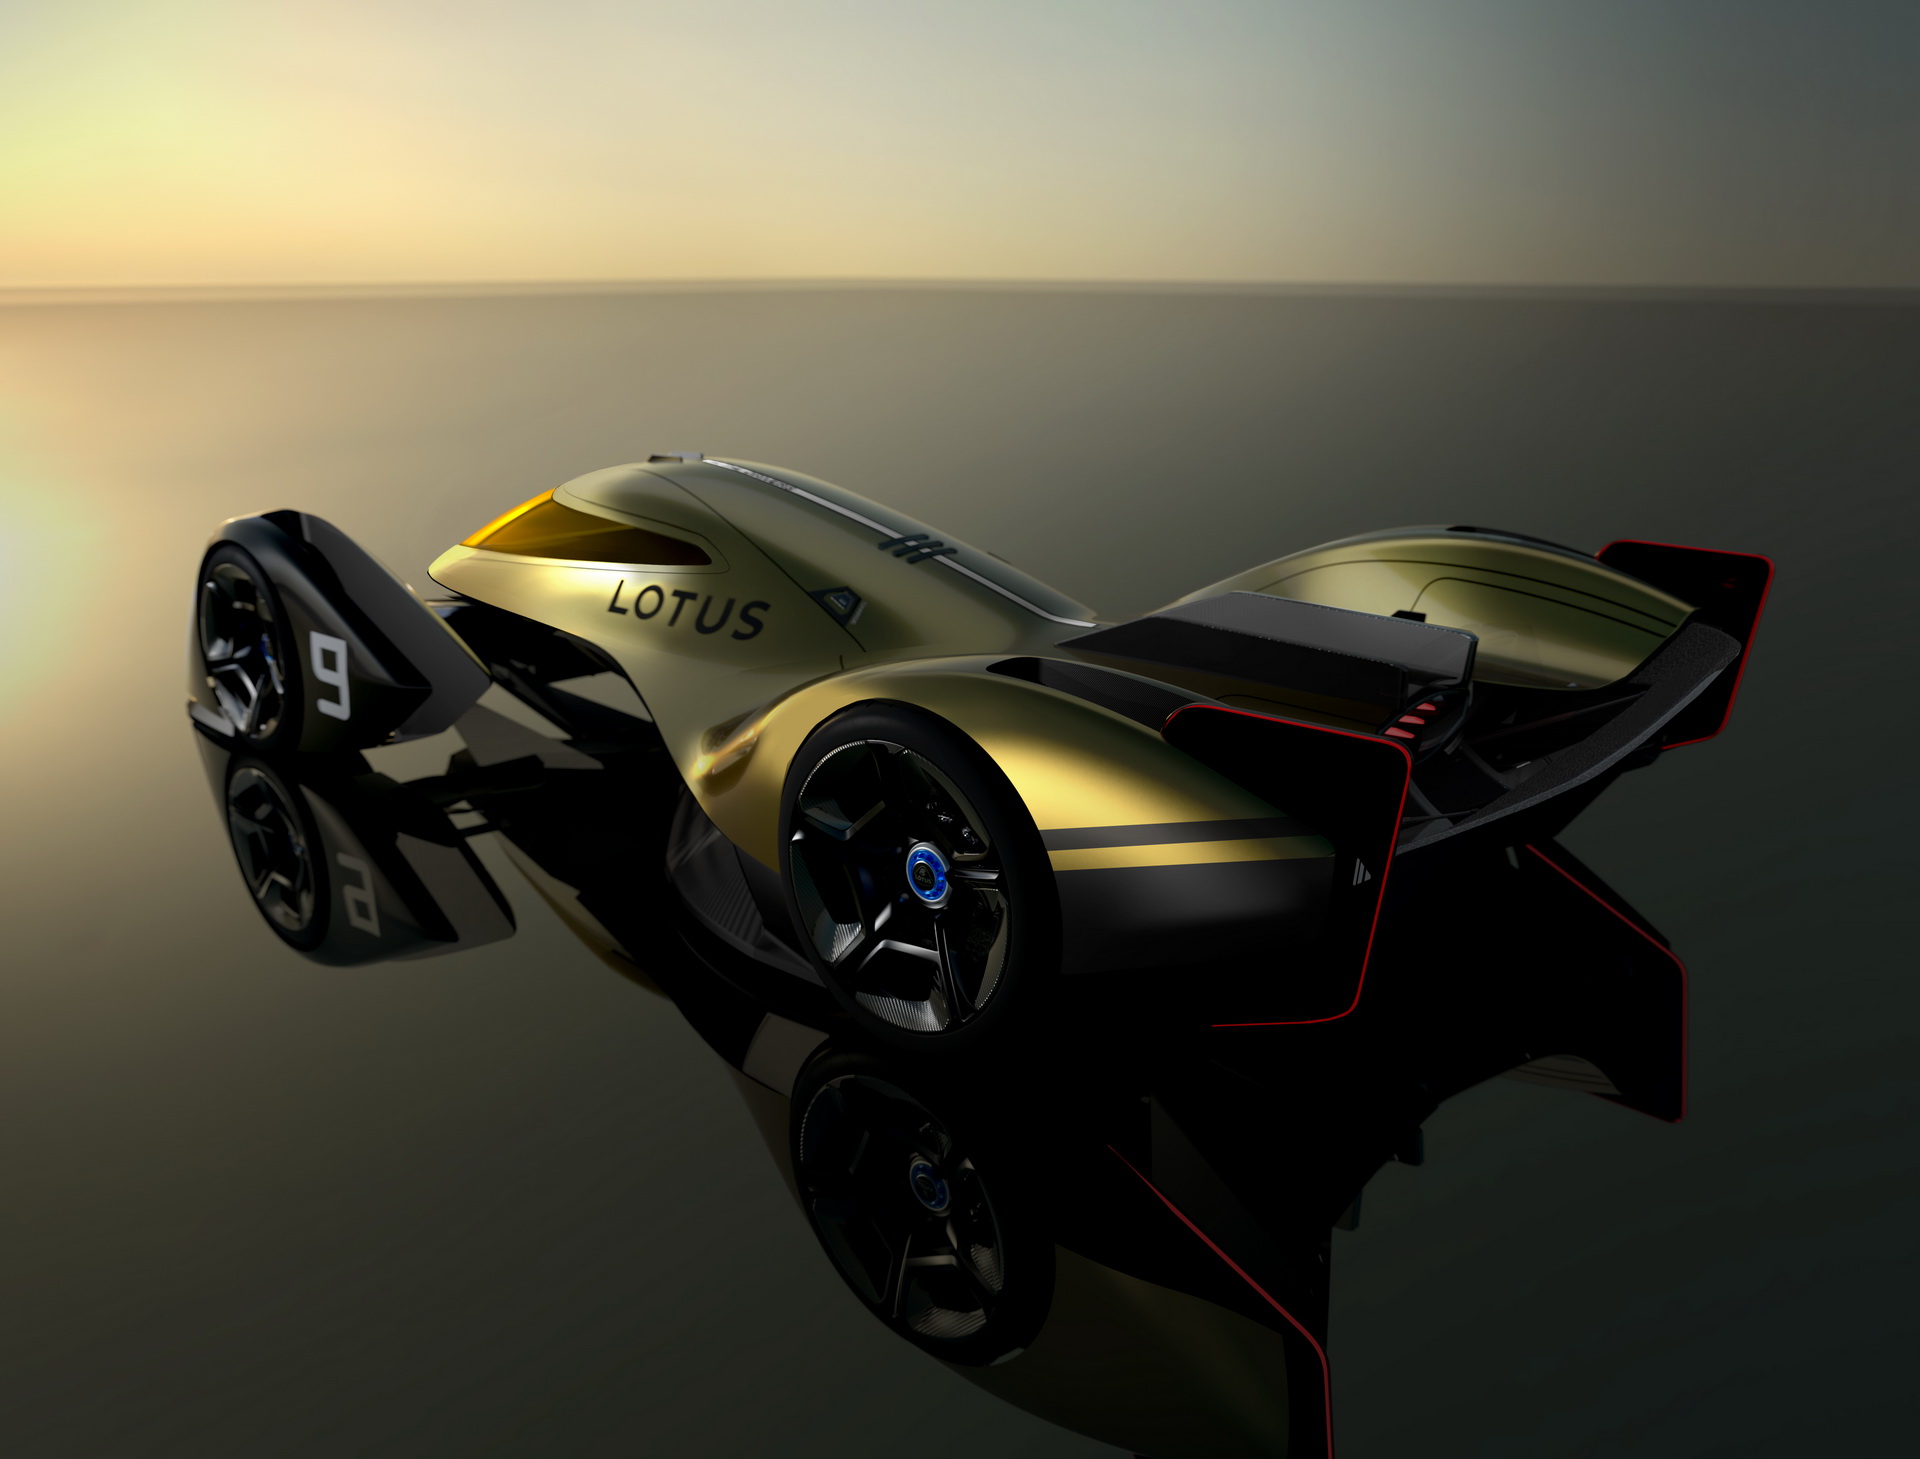 Lotus E-R9, 2021 – Design study for 2030